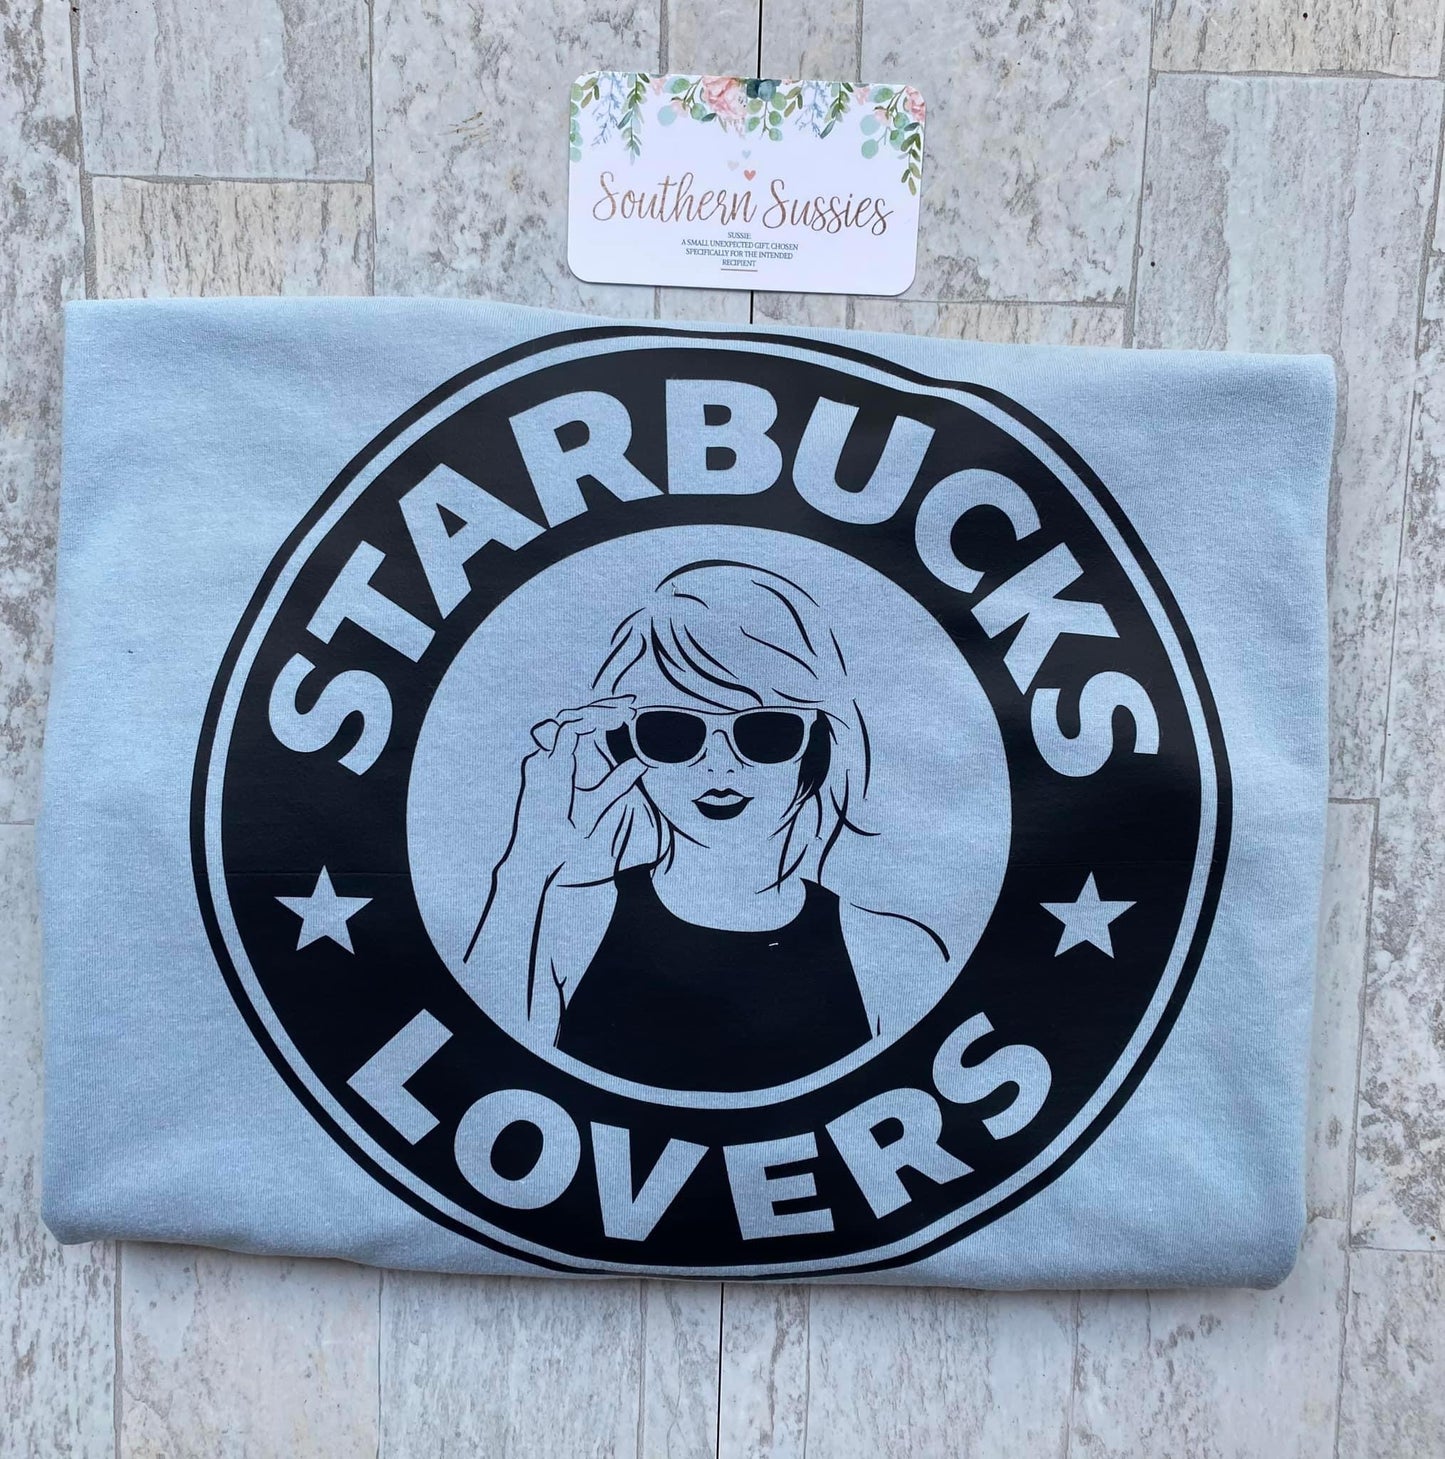 Starbucks Lovers